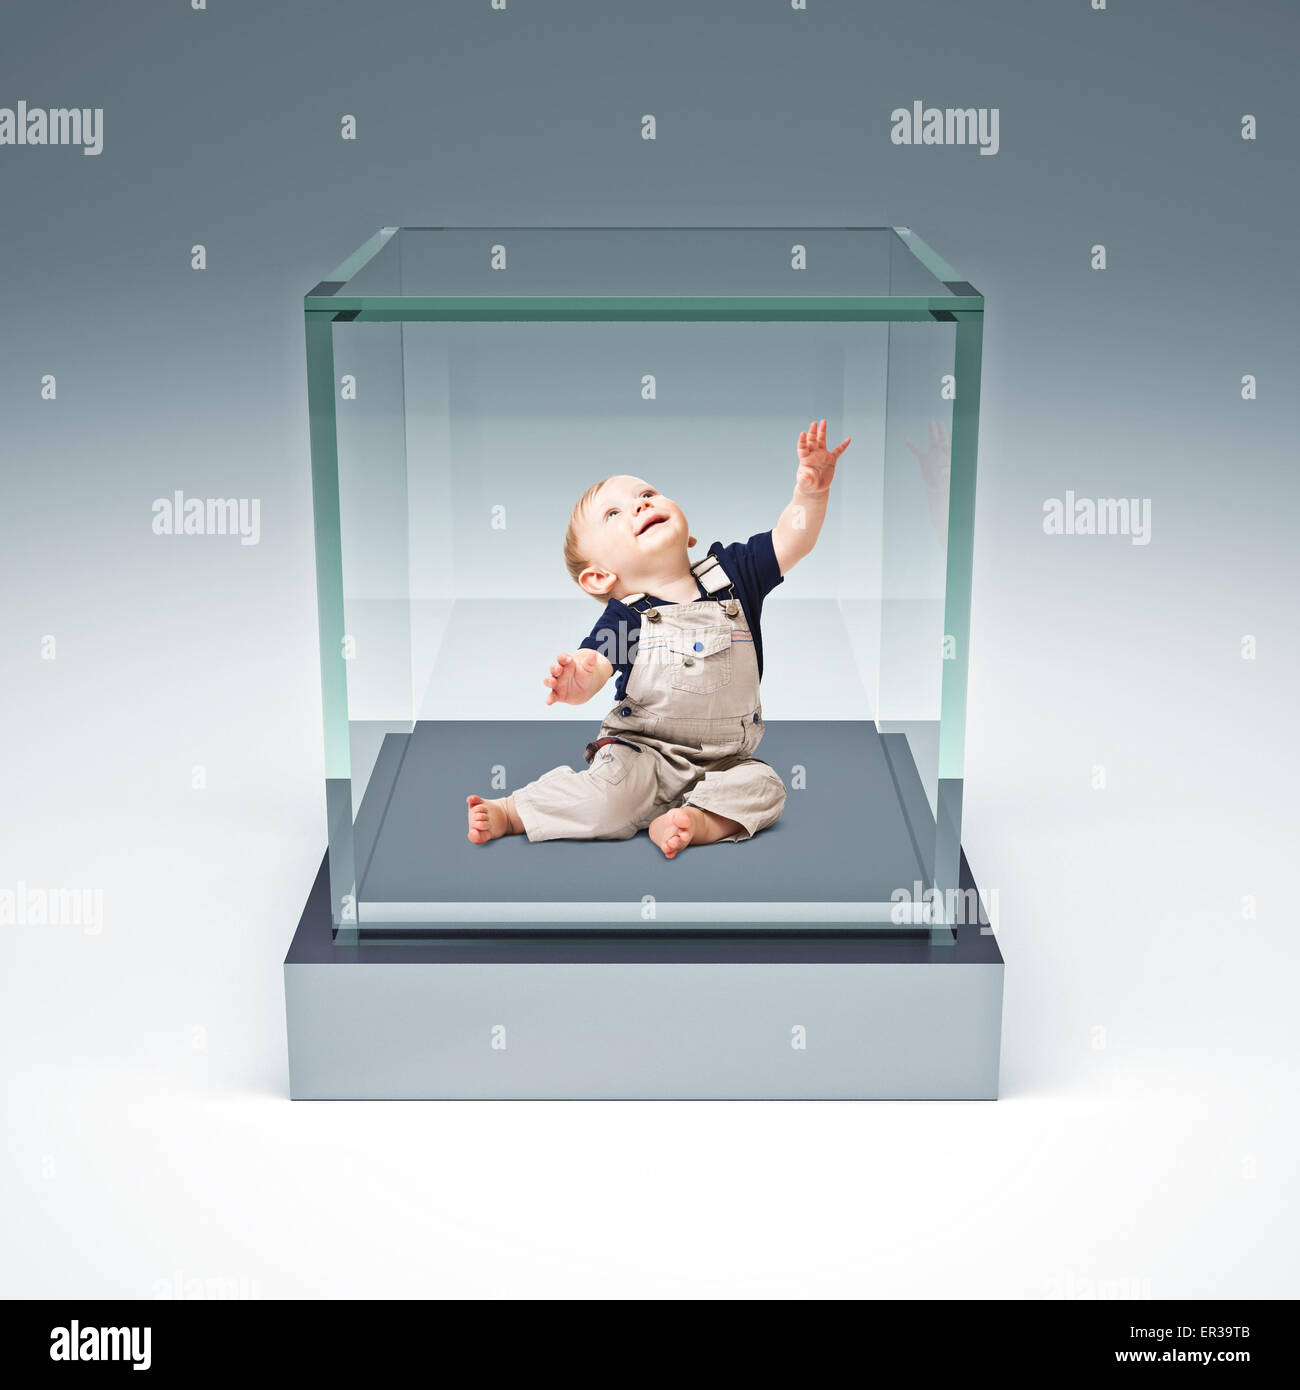 kleines Kind im Glaskasten Stockfotografie - Alamy